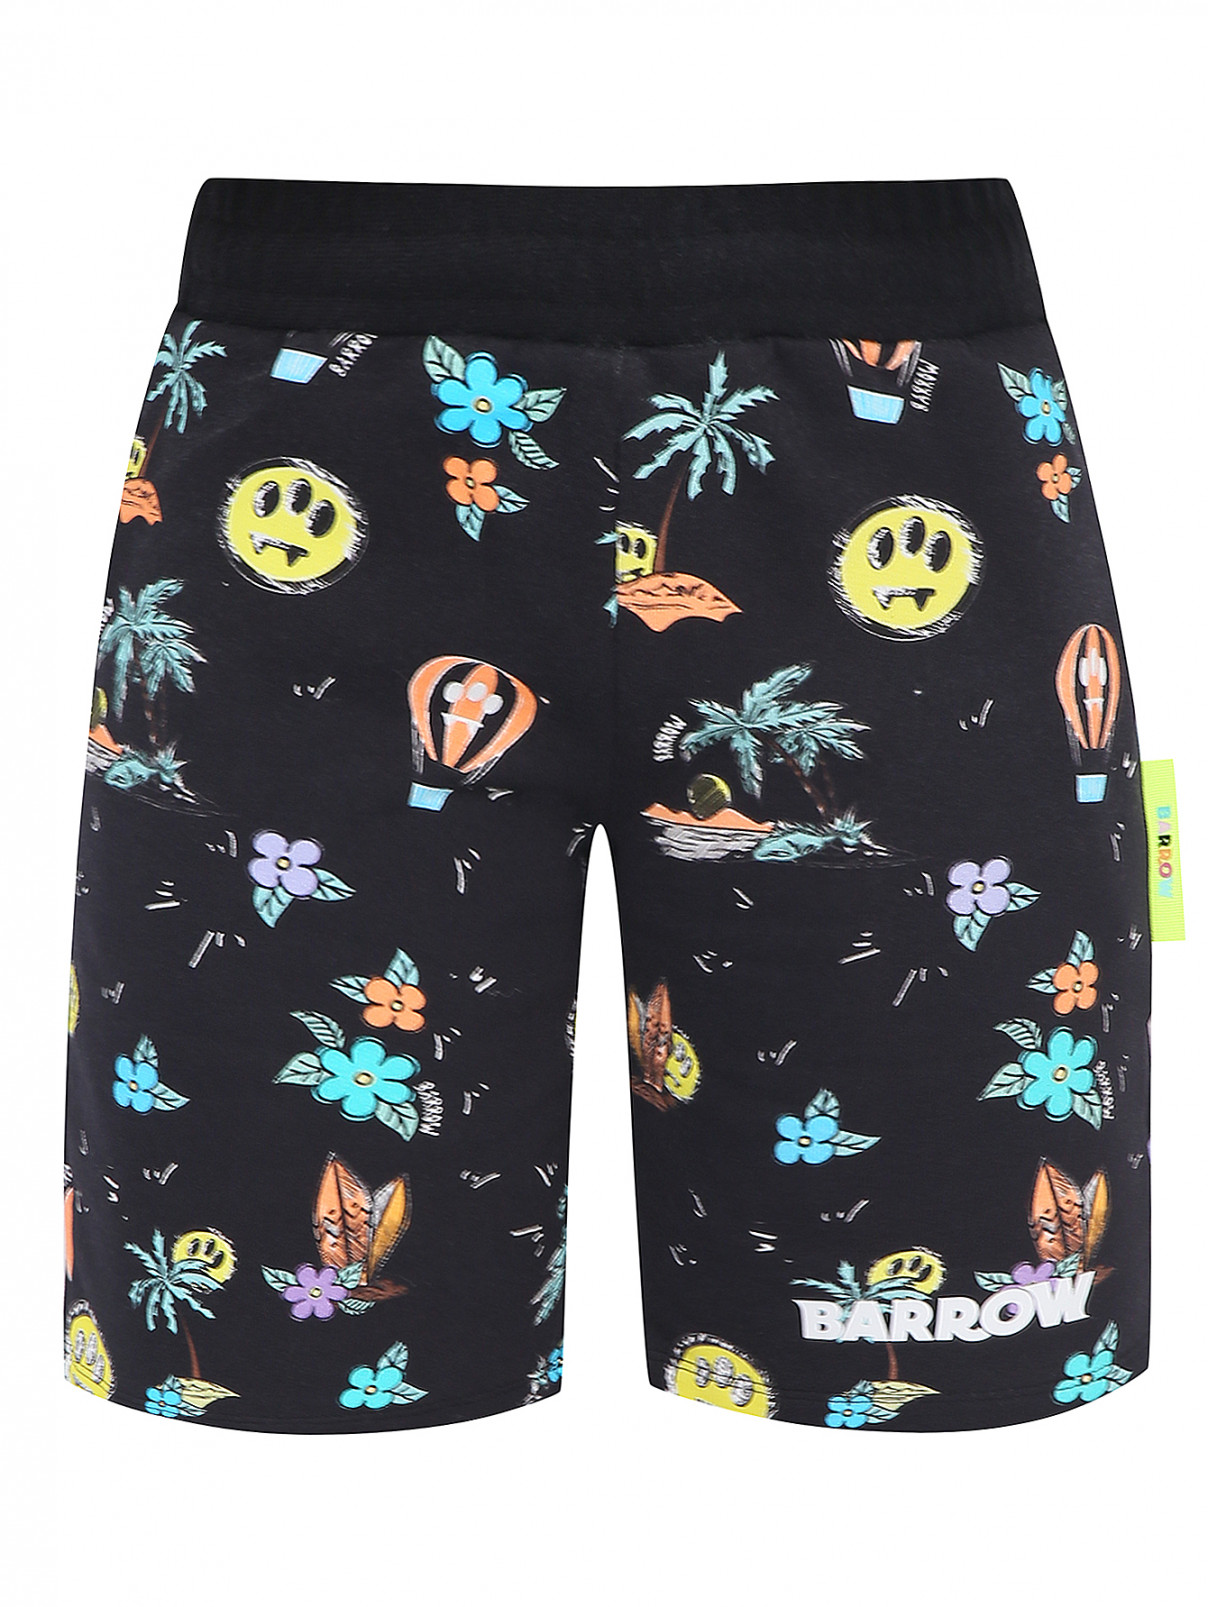 Хлопковые шорты на резинке Barrow Kids  –  Общий вид  – Цвет:  Узор